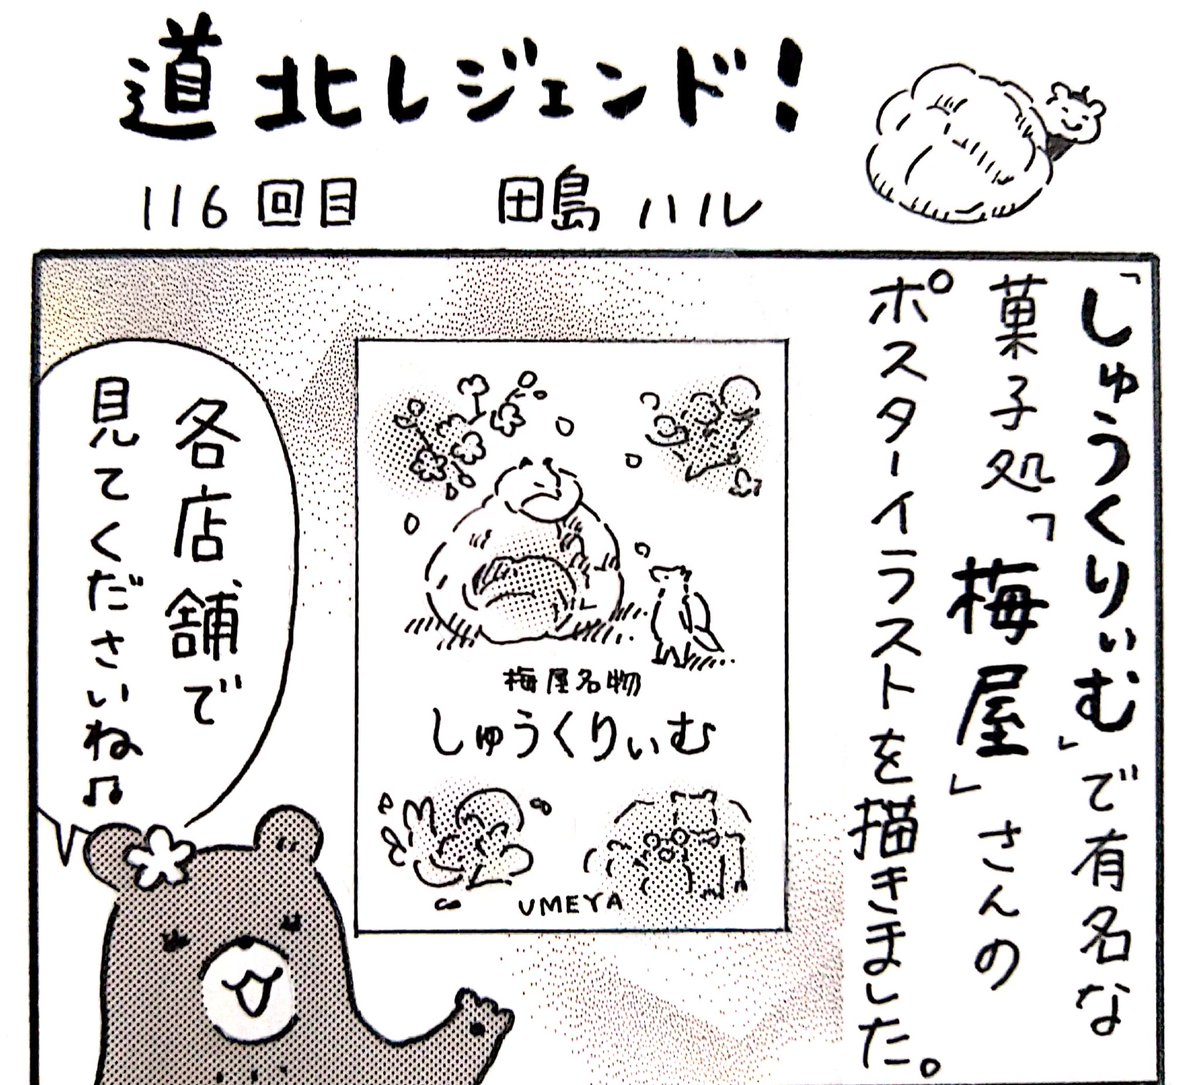 本日10日(木)の北海道新聞夕刊旭川面に漫画 #道北レジェンド !116回目載ってます。しゅうくりぃむで有名な、菓子処 梅屋さんが復刻発売した某お菓子について。バタークリーム好きの方にぜひ食べていただきたい!
#旭川 #漫画 